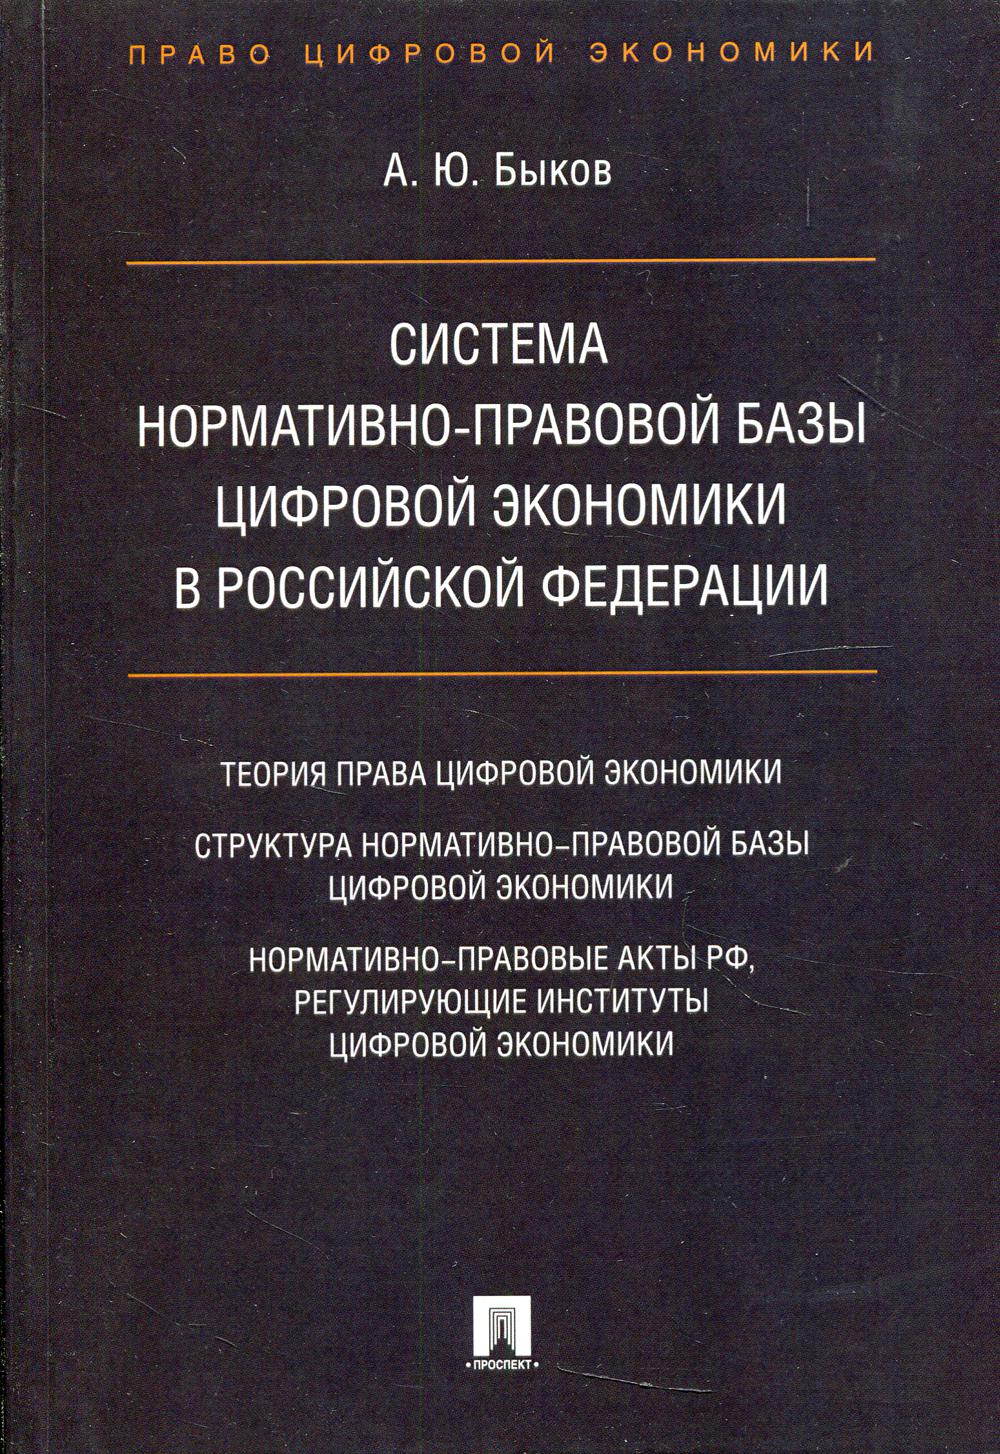 Система нормативно-правовой базы цифровой экономики в Российской Федерации